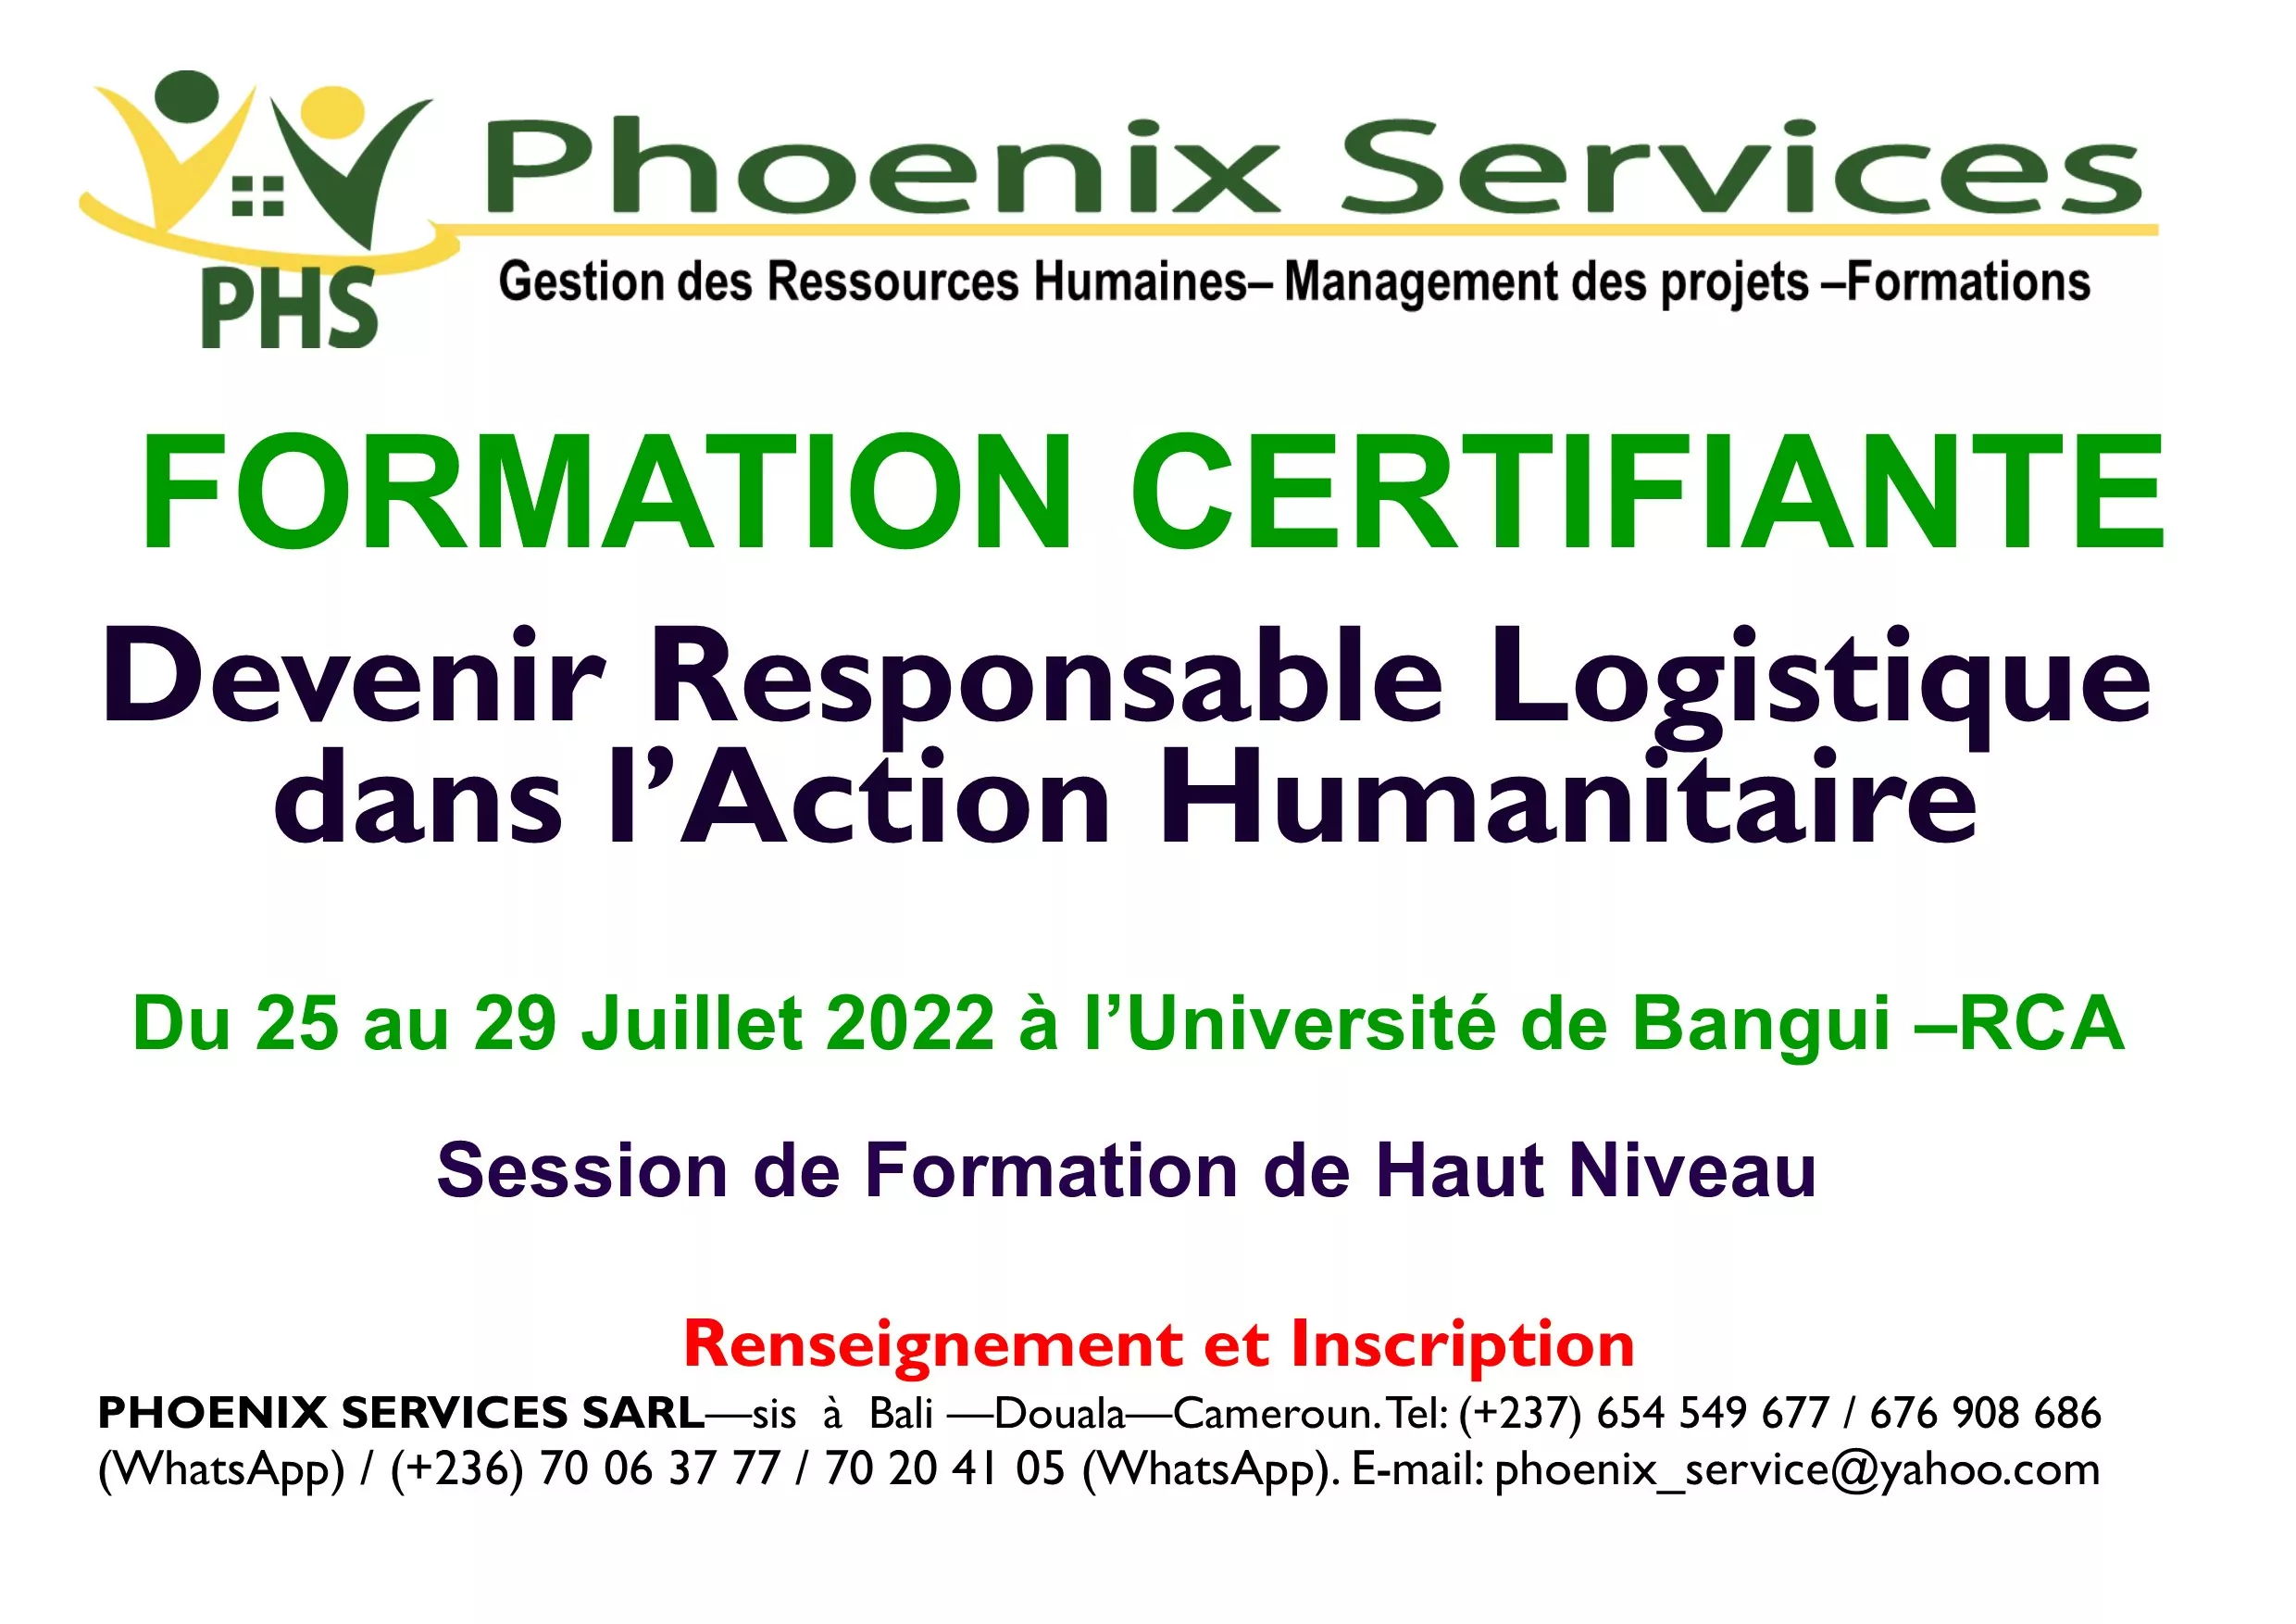 Phoenix Services Sarl lance une formation certifiante : Devenir Responsable Logistique dans l’Action Humanitaire, Bangui, RCA